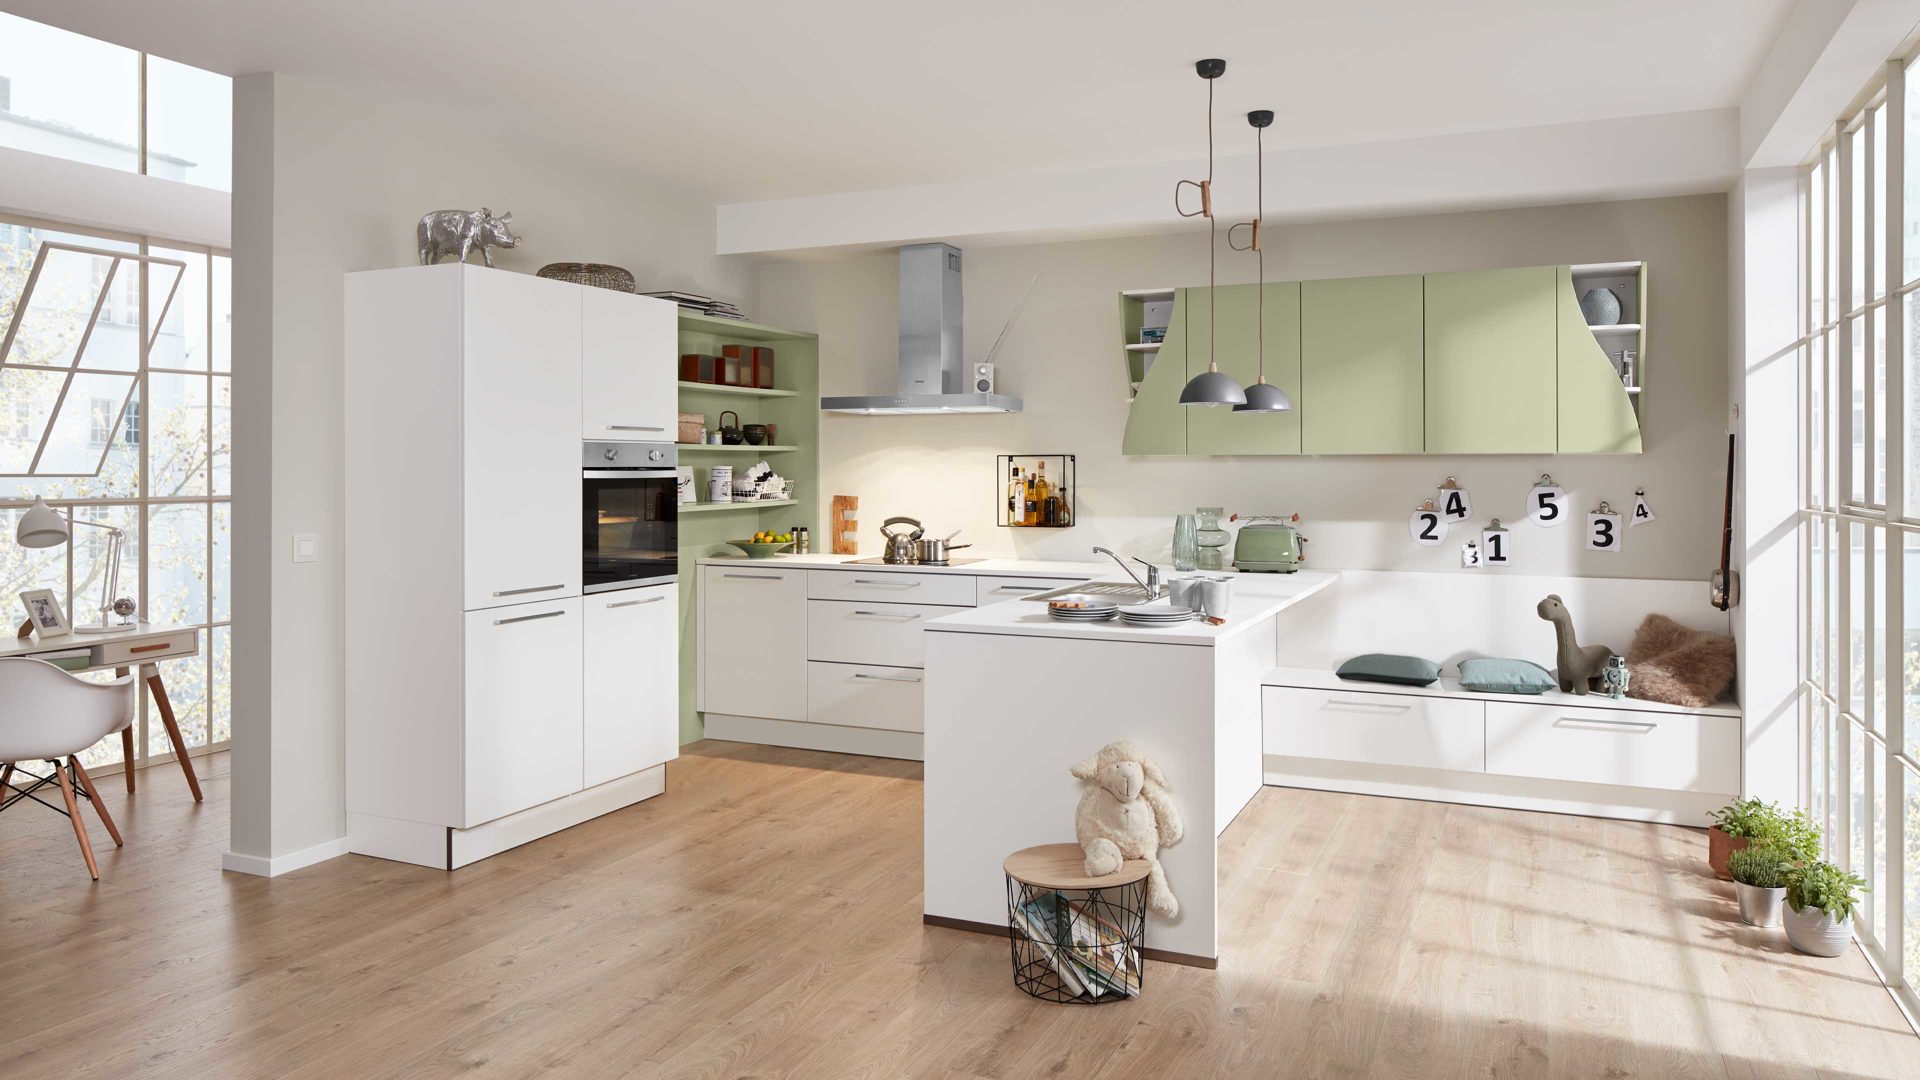 Einbauküche Interliving aus Holz in Weiß Interliving Küche Serie 3010 mit privileg Einbaugeräten Weiß & Avocado – vierzeilig